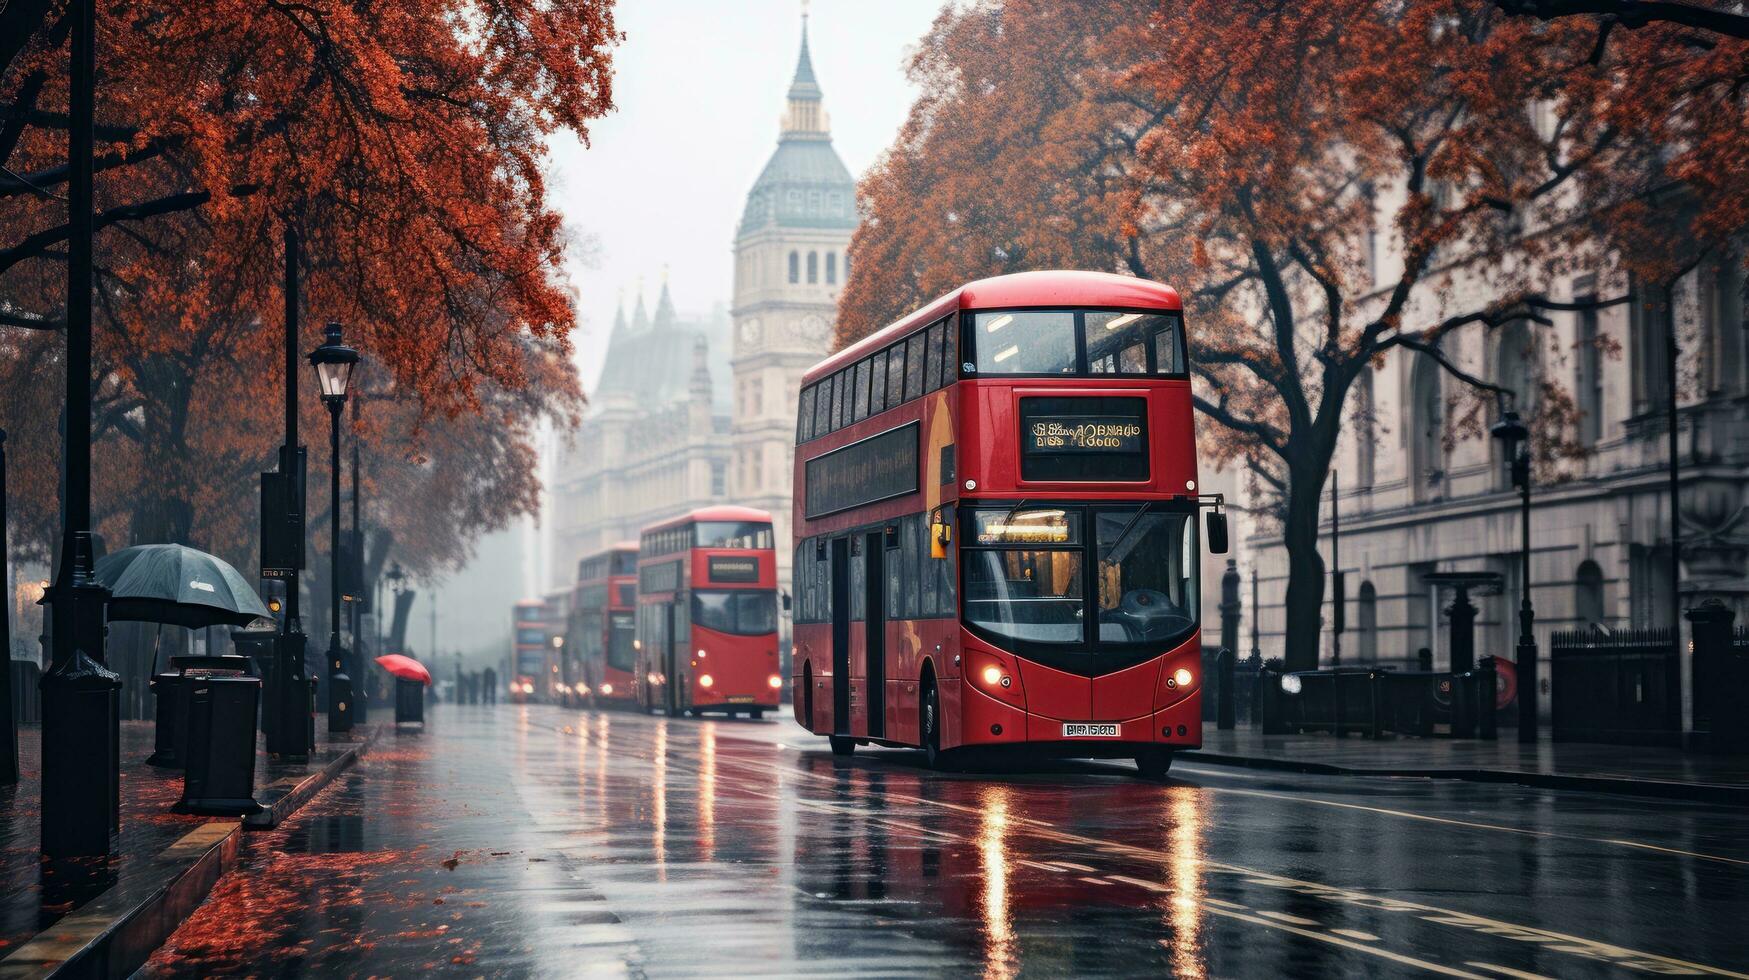 Londen straat met rood bus in regenachtig dag schetsen illustratie foto